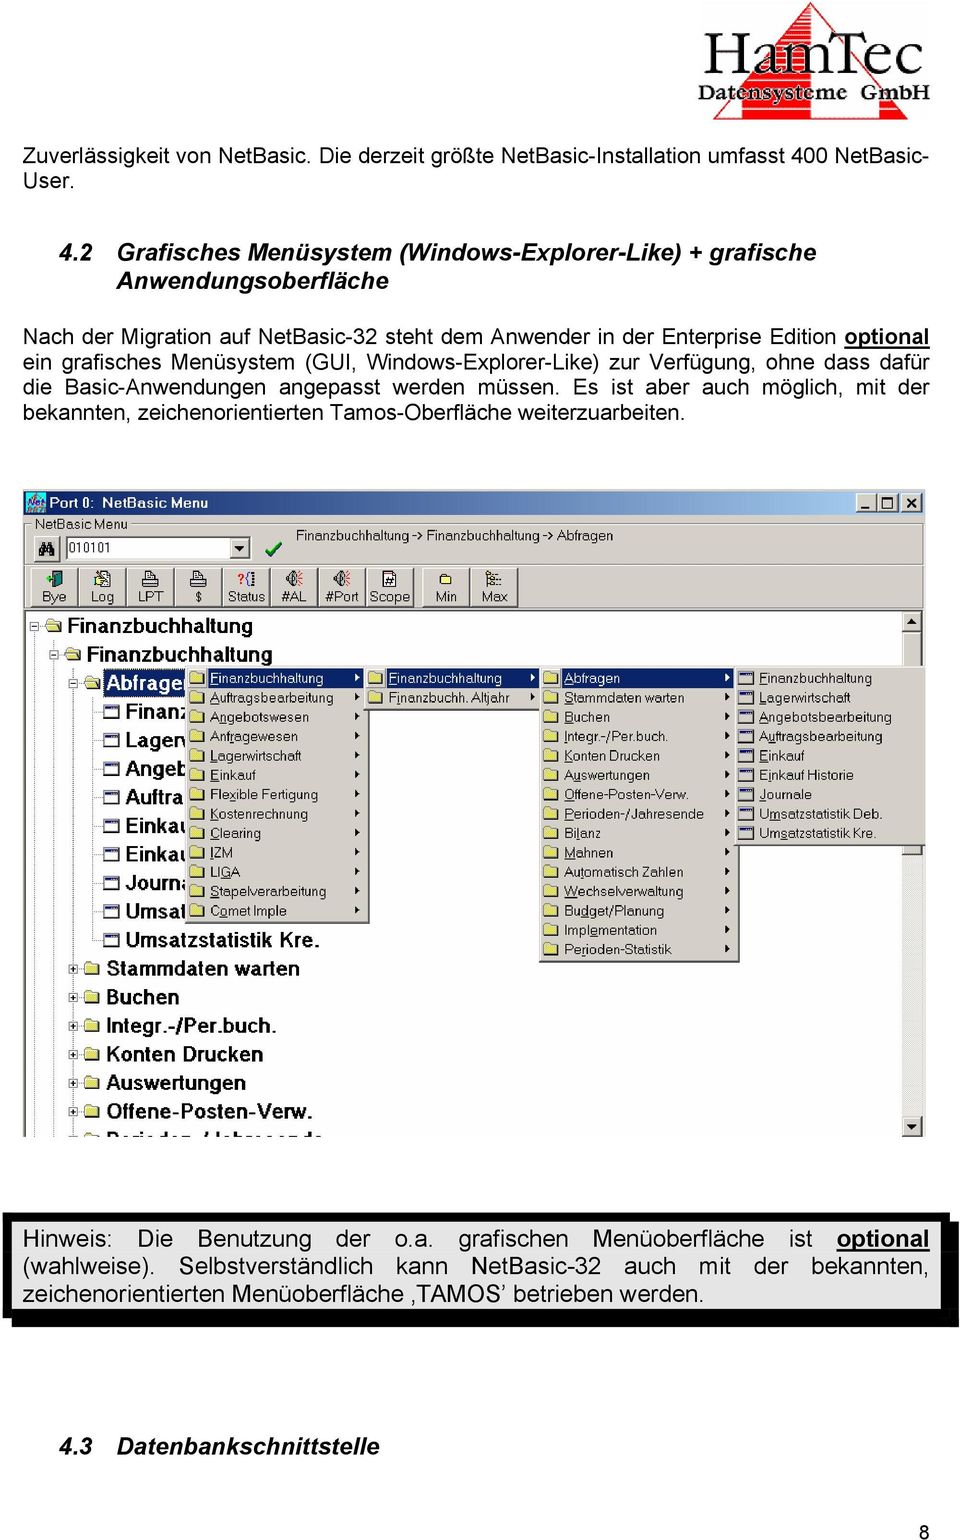 2 Grafisches Menüsystem (Windows-Explorer-Like) + grafische Anwendungsoberfläche Nach der Migration auf NetBasic-32 steht dem Anwender in der Enterprise Edition optional ein